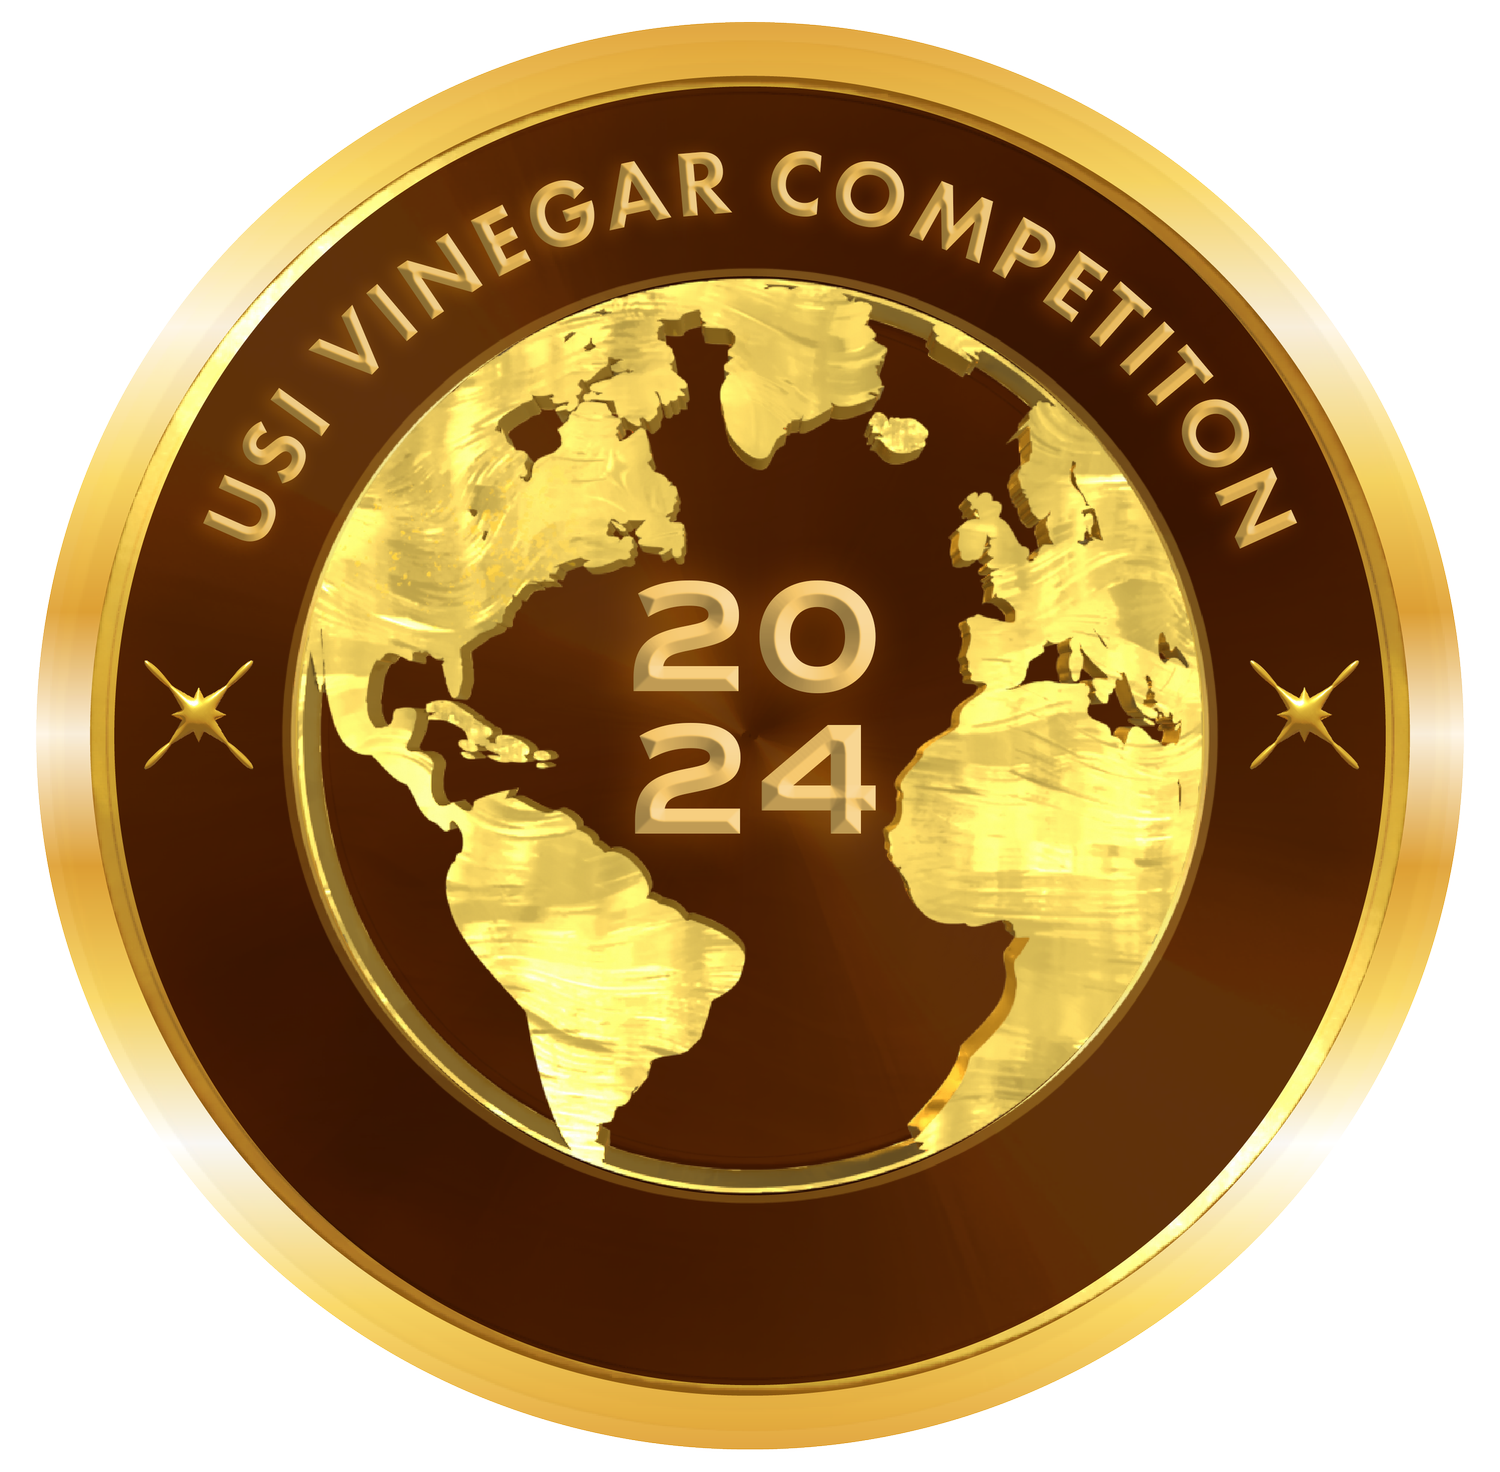 USI Vinegar Competition